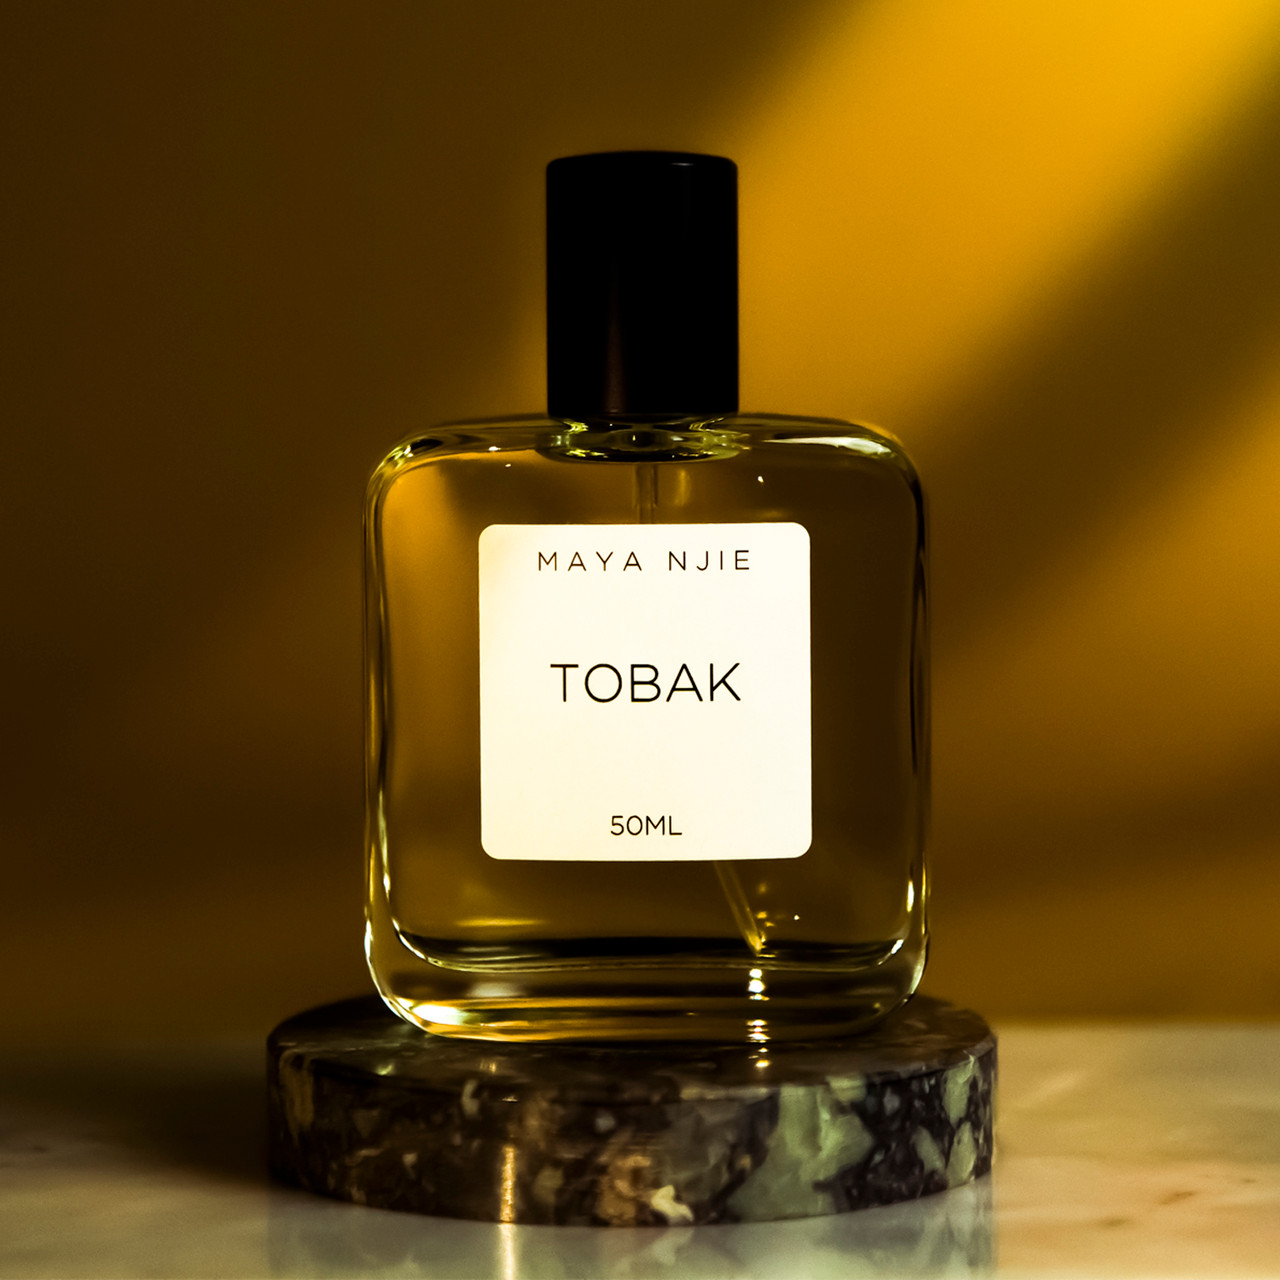 Tobak Eau De Parfum, Maya Njie, tomfoolery